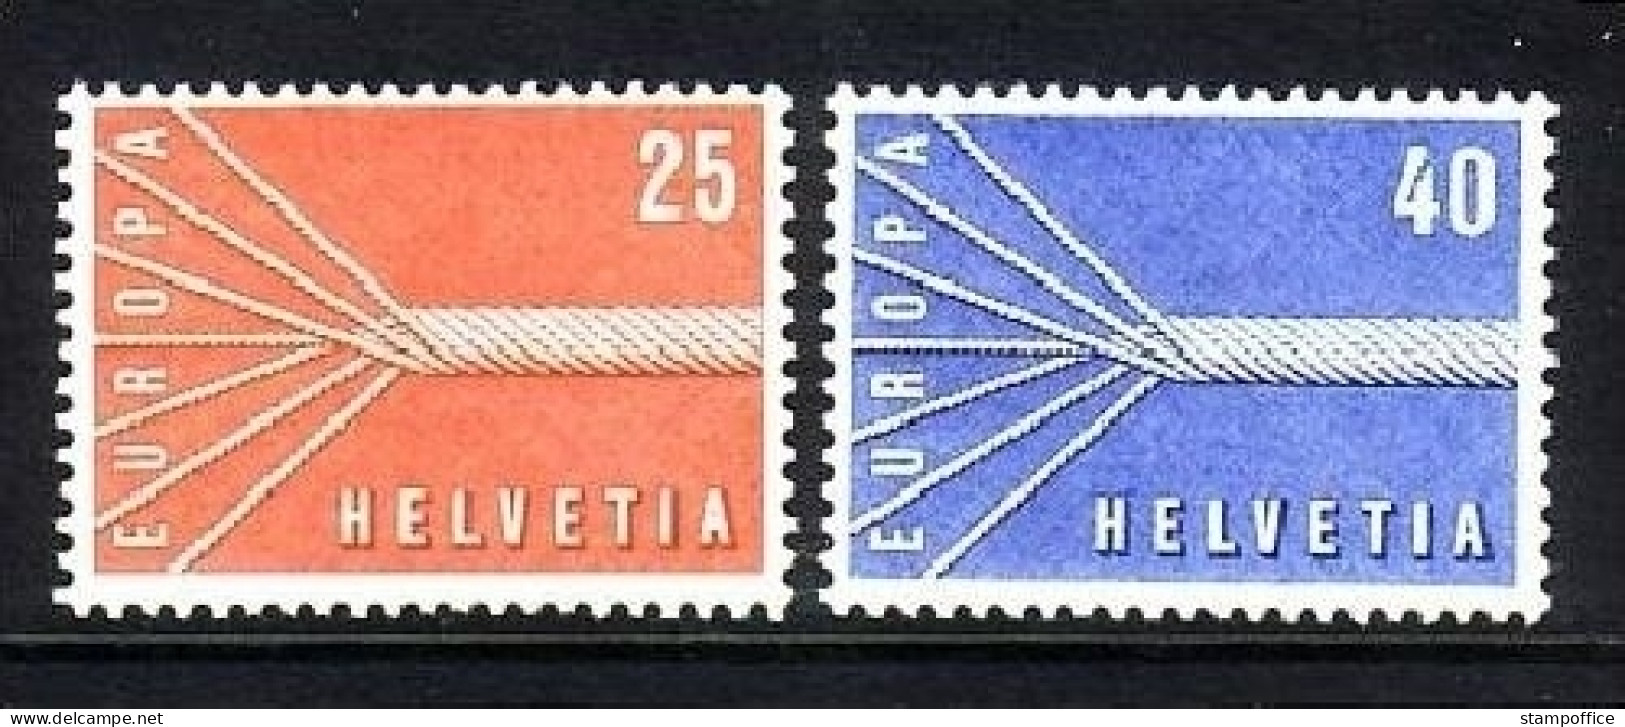 SCHWEIZ MI-NR. 646-647 POSTFRISCH(MINT) EUROPA 1957 SIEBENADRIGES SEIL - 1957